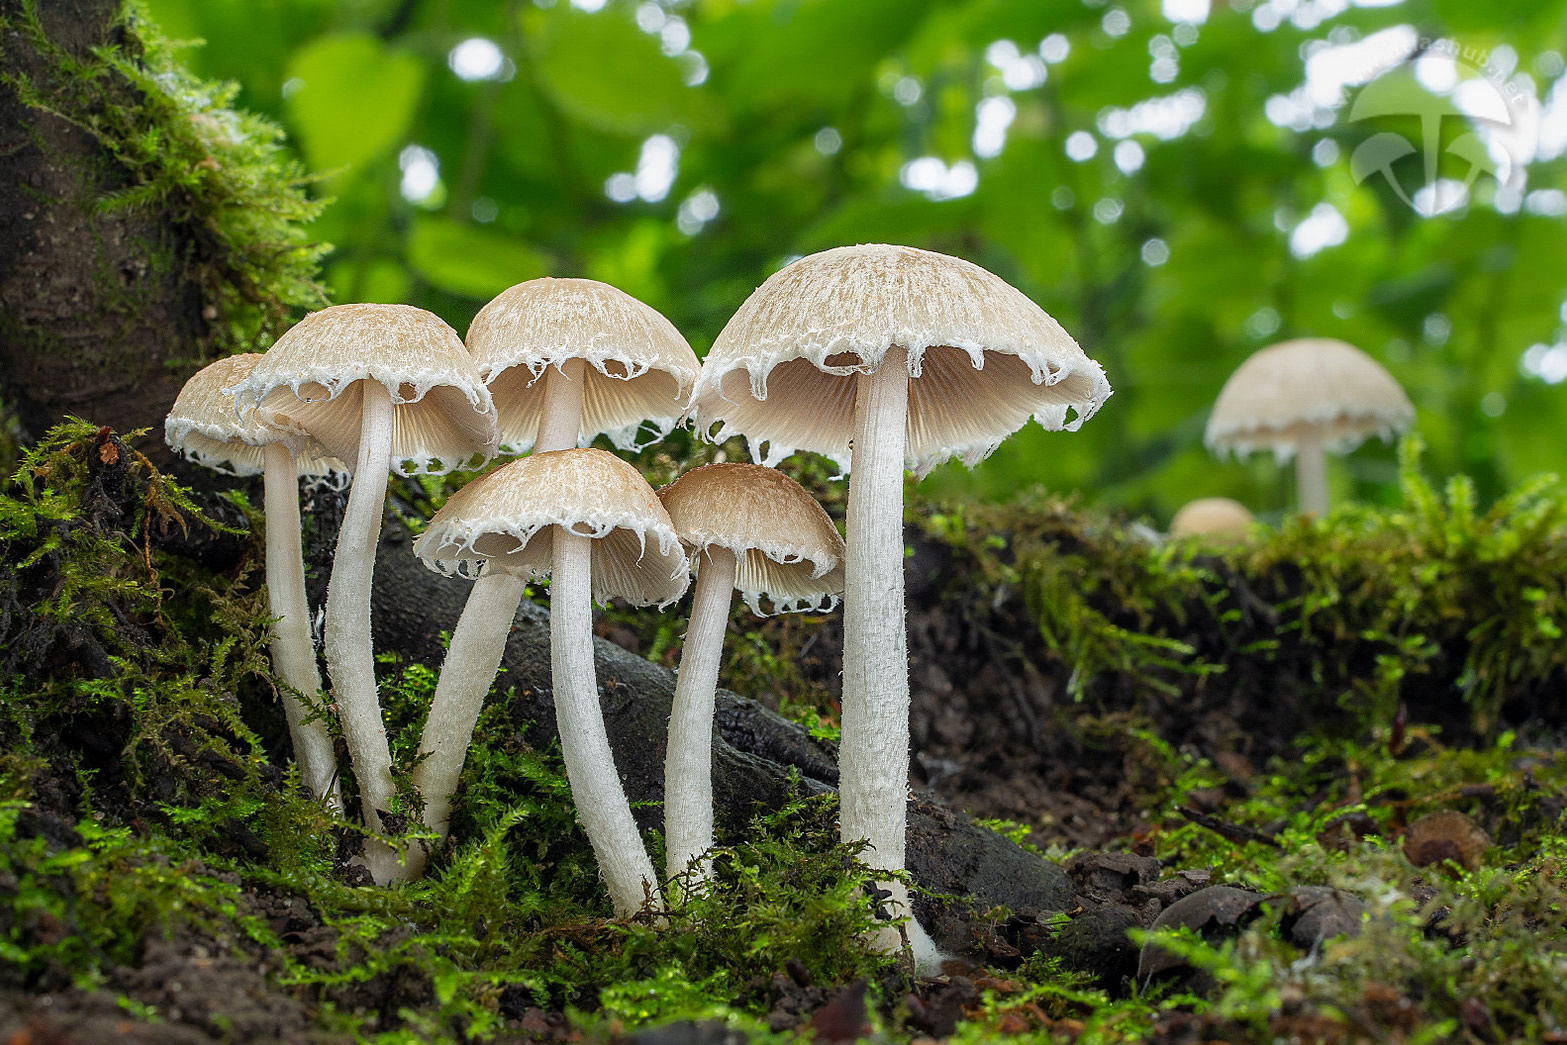 Как вырастить panaeolus jamaica (2016) просто повторите и будут грибы используйте как мануал для любых панелоусов - faq руководства и пособия по культивации.грибов,сборке парников,инкубаторов,главбокс